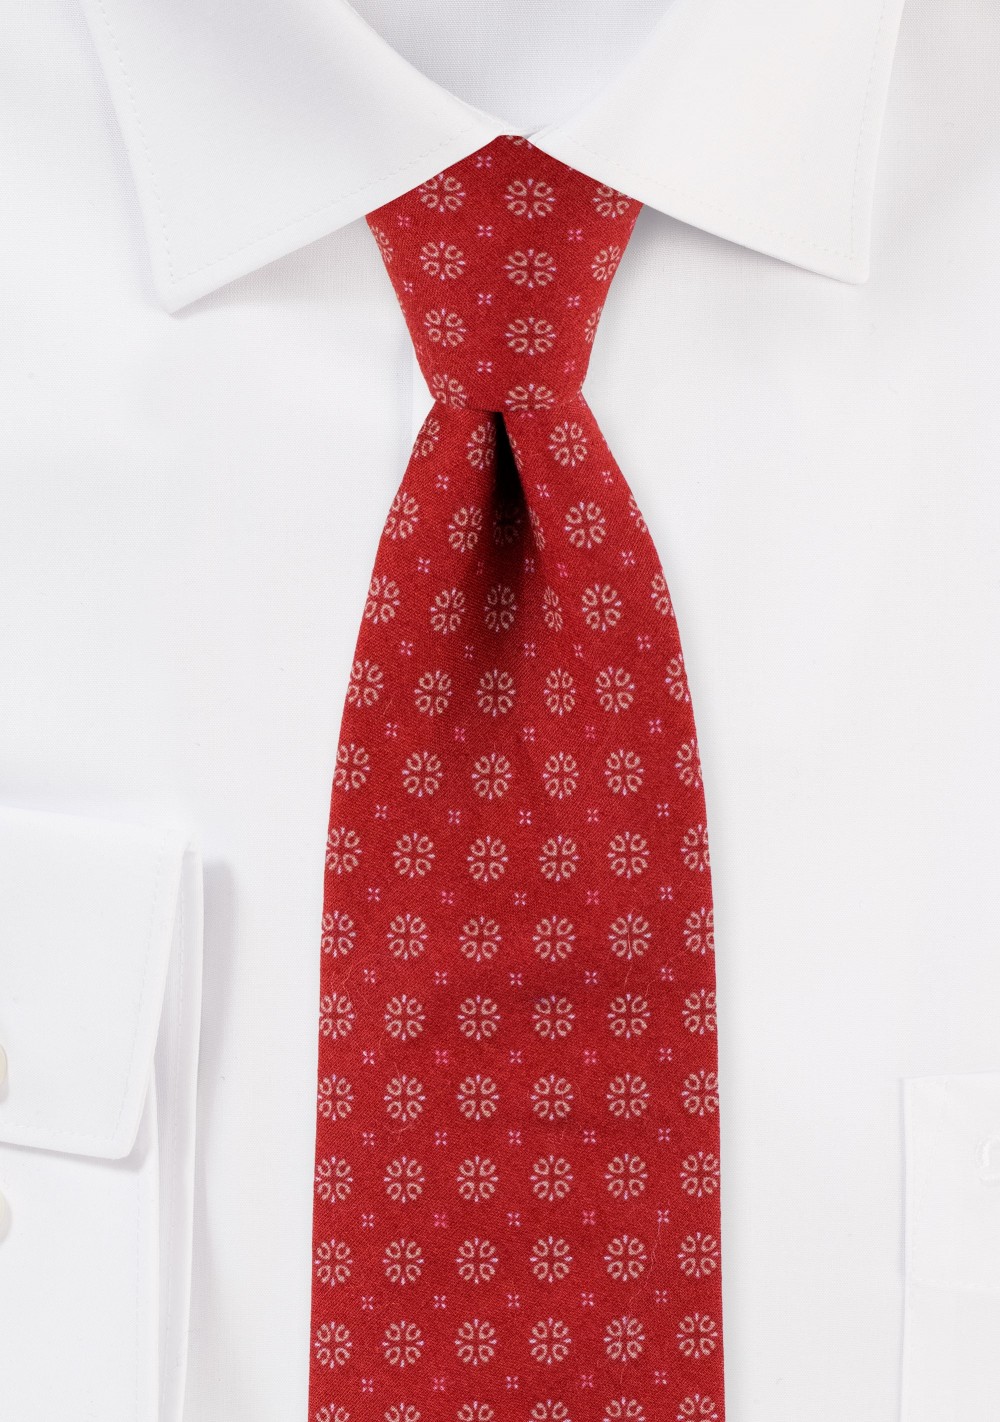 Slim Cut Geometric Design Print Tie in Cherry Red